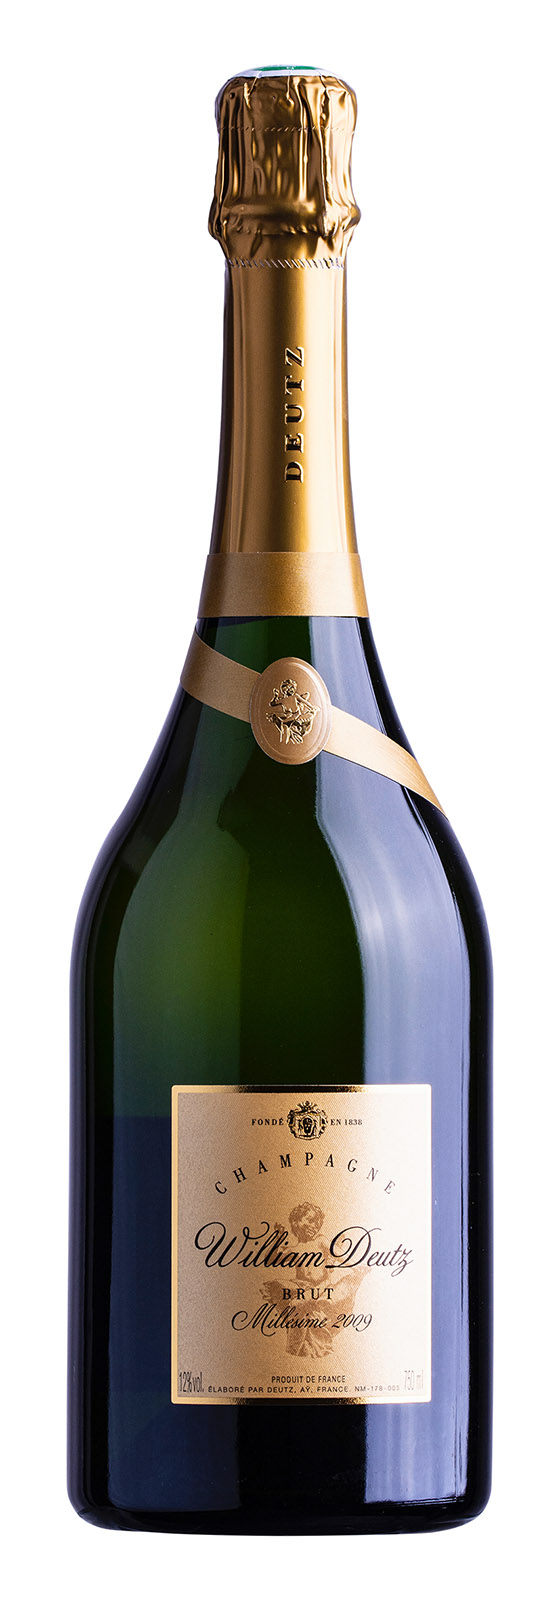 Champagne AOC William Deutz 2009